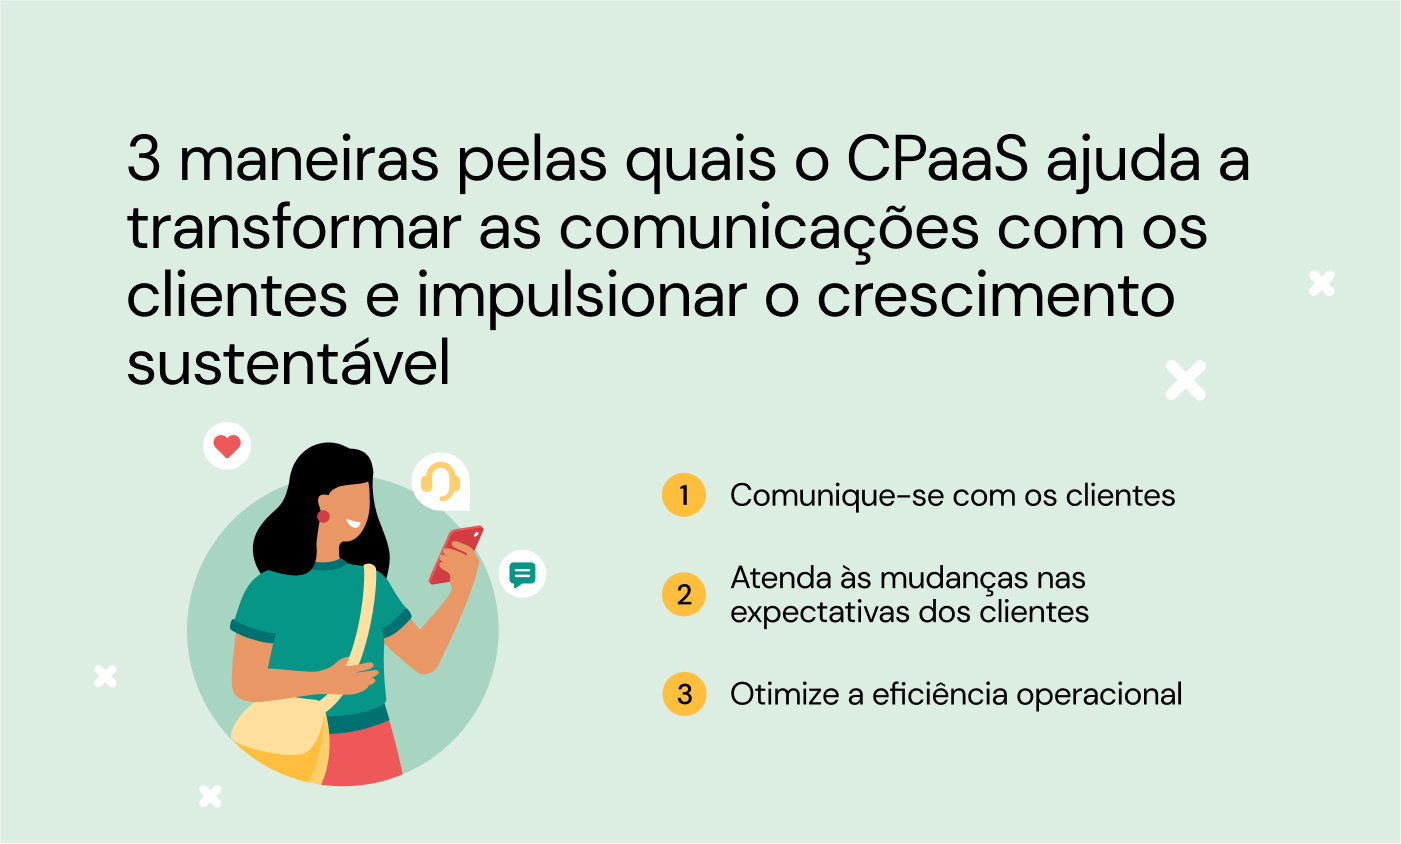 Imagem mostrando as três maneiras pelas quais o CPaaS ajuda a transformar as comunicações e o crescimento